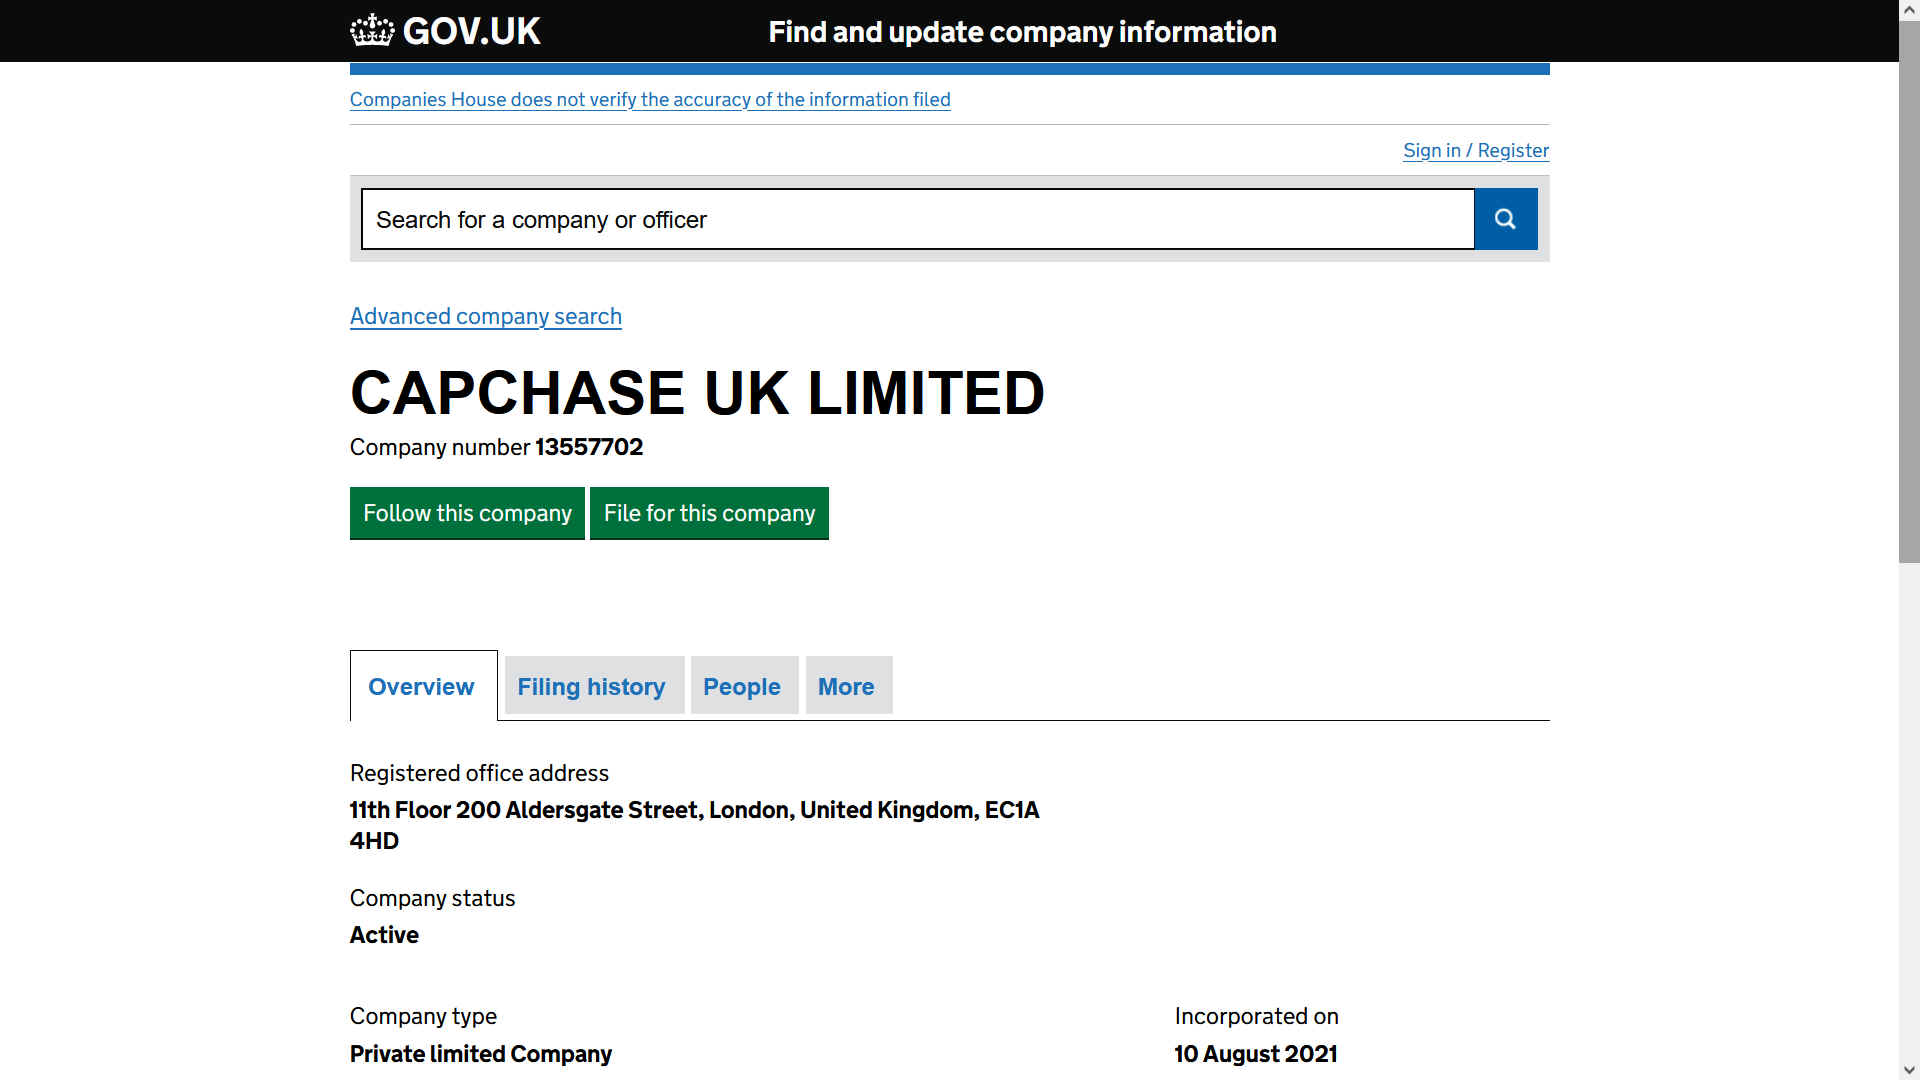 Capchase UK Limited company number 13557702, London based